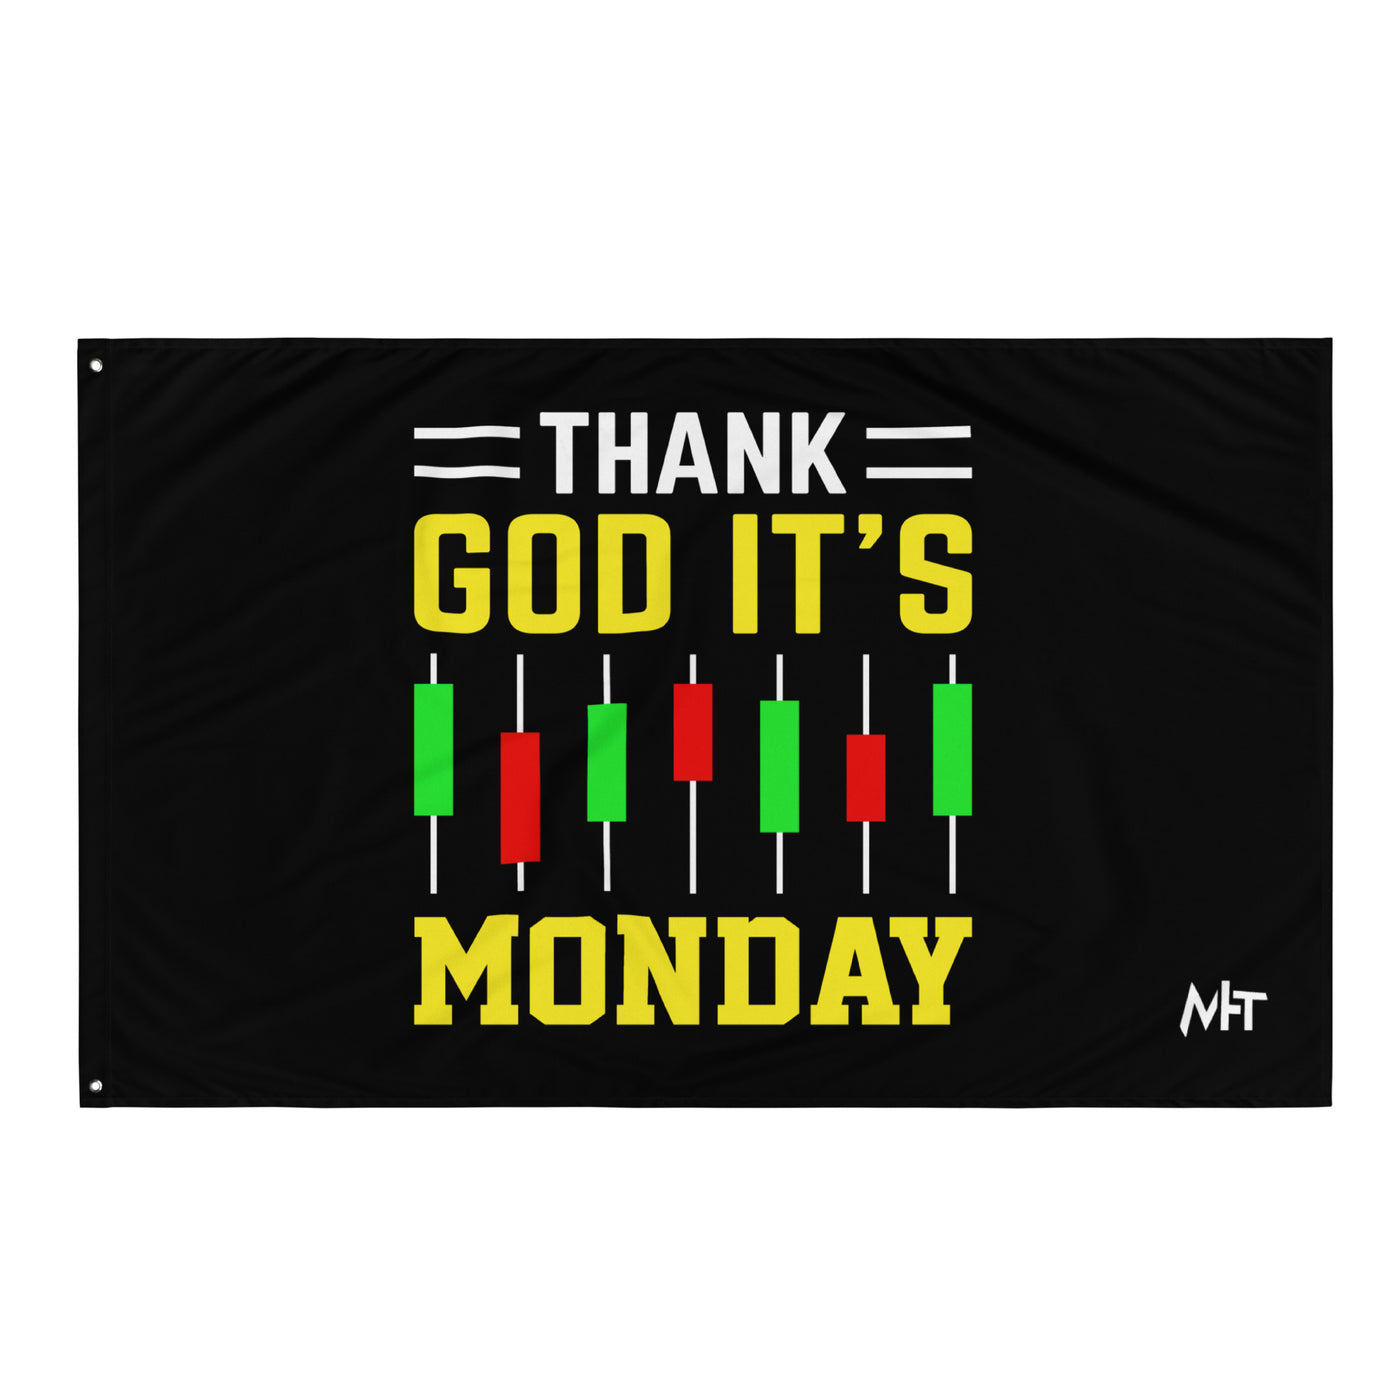 Thank God! It's Monday - Flag